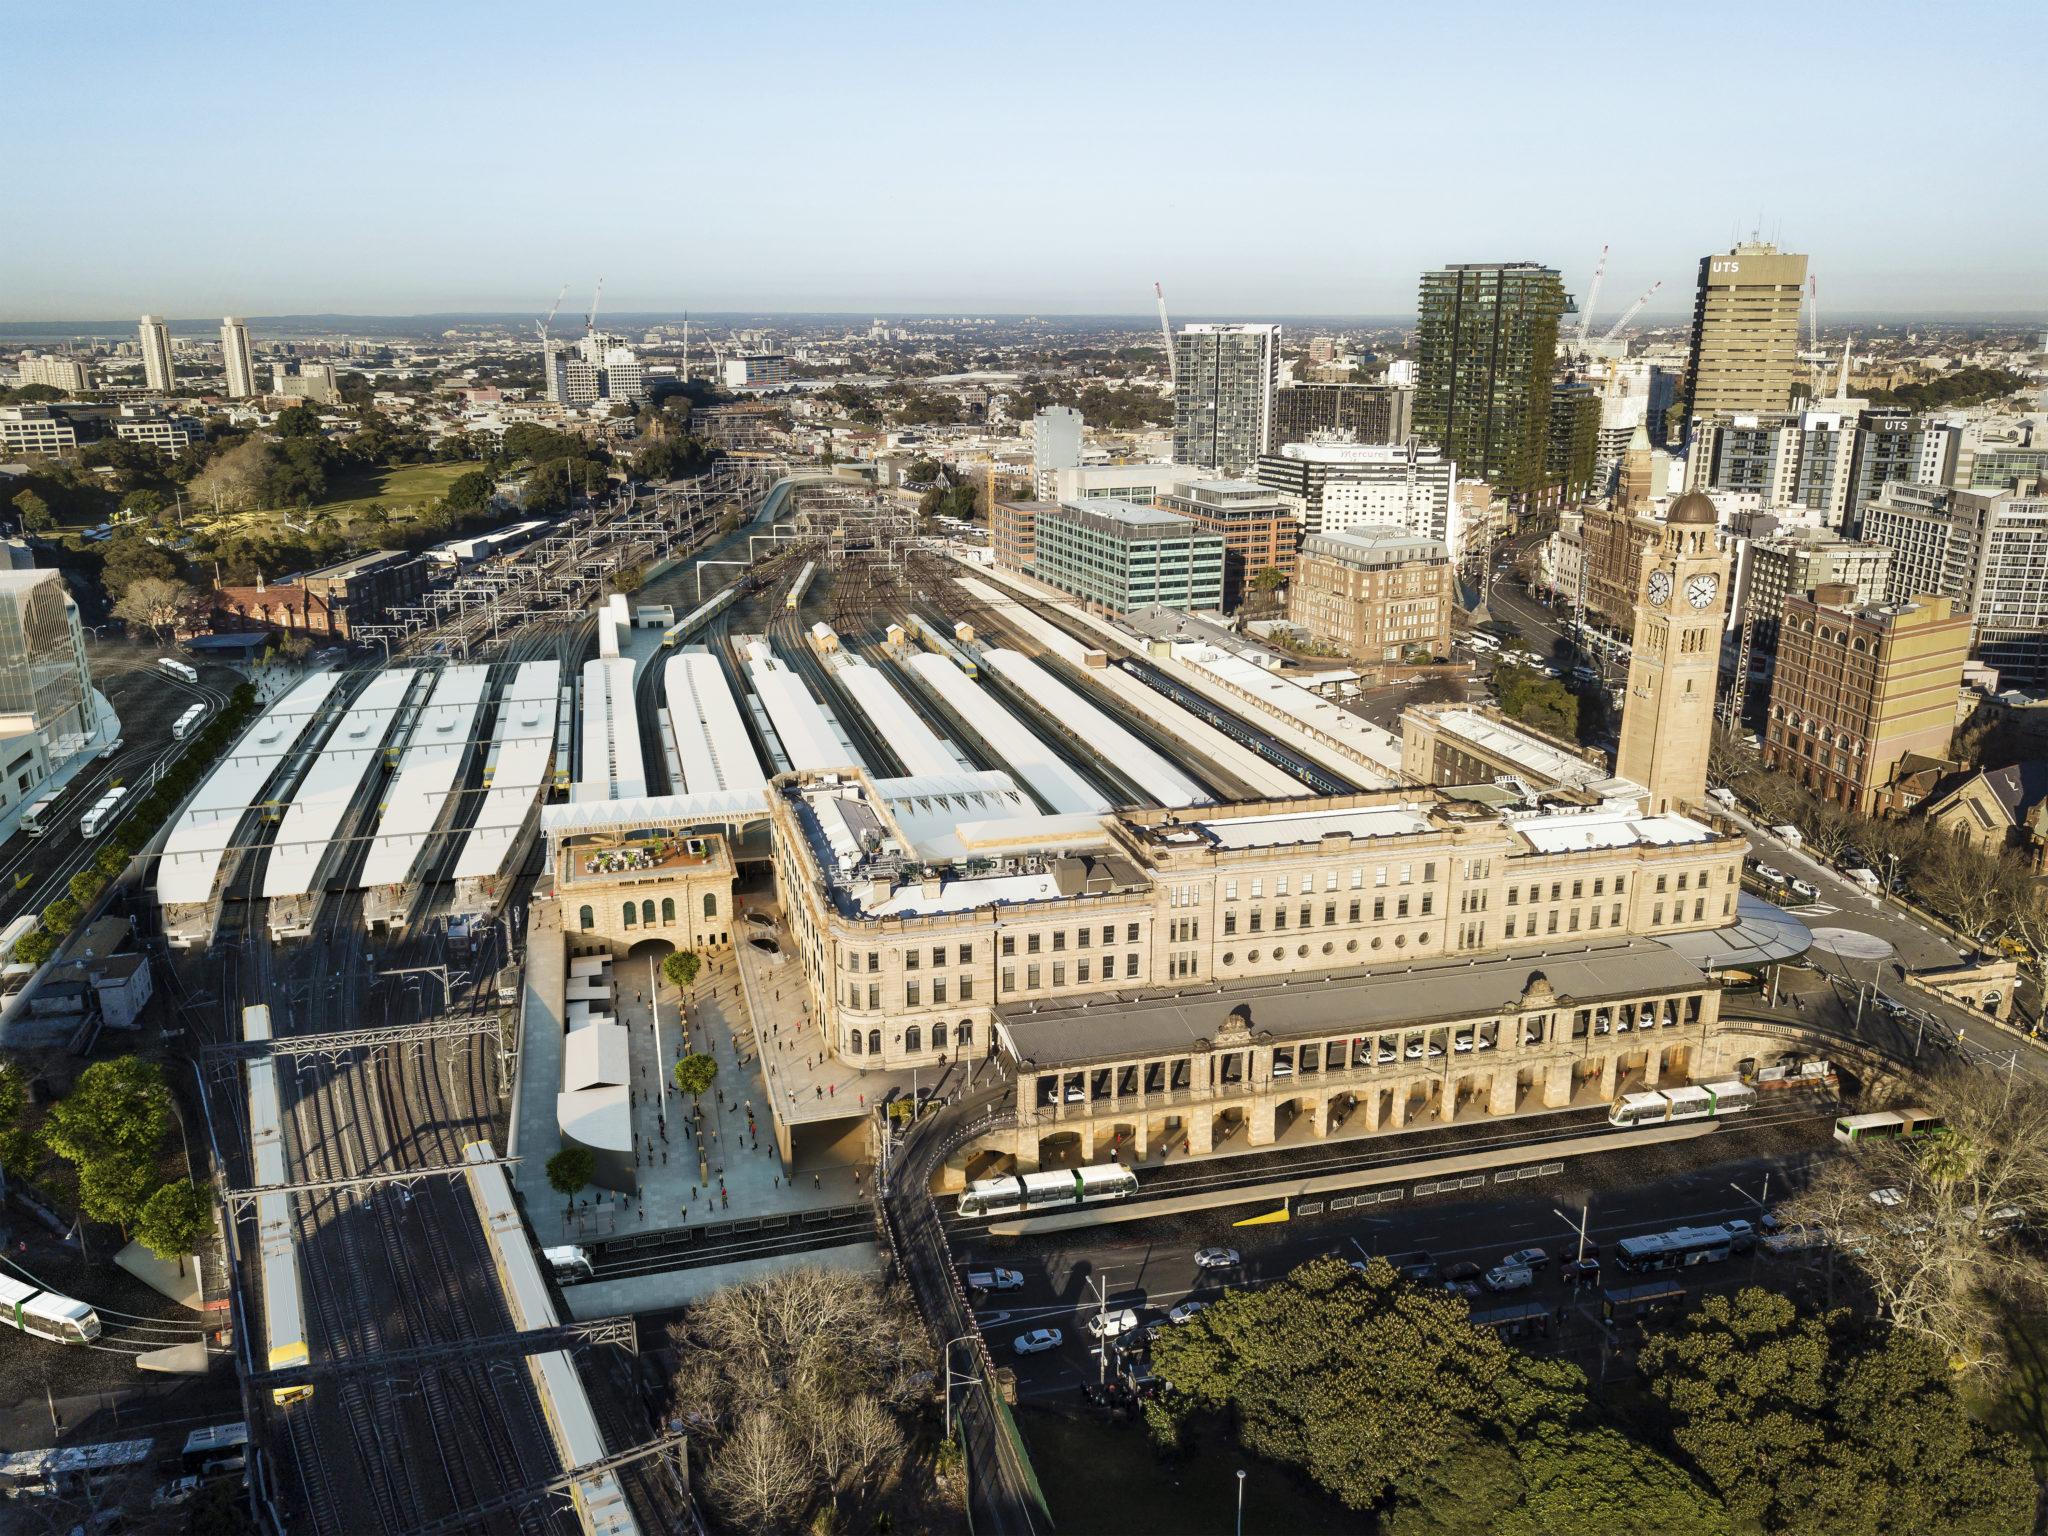 Sydney Central Station Heritage Restoration